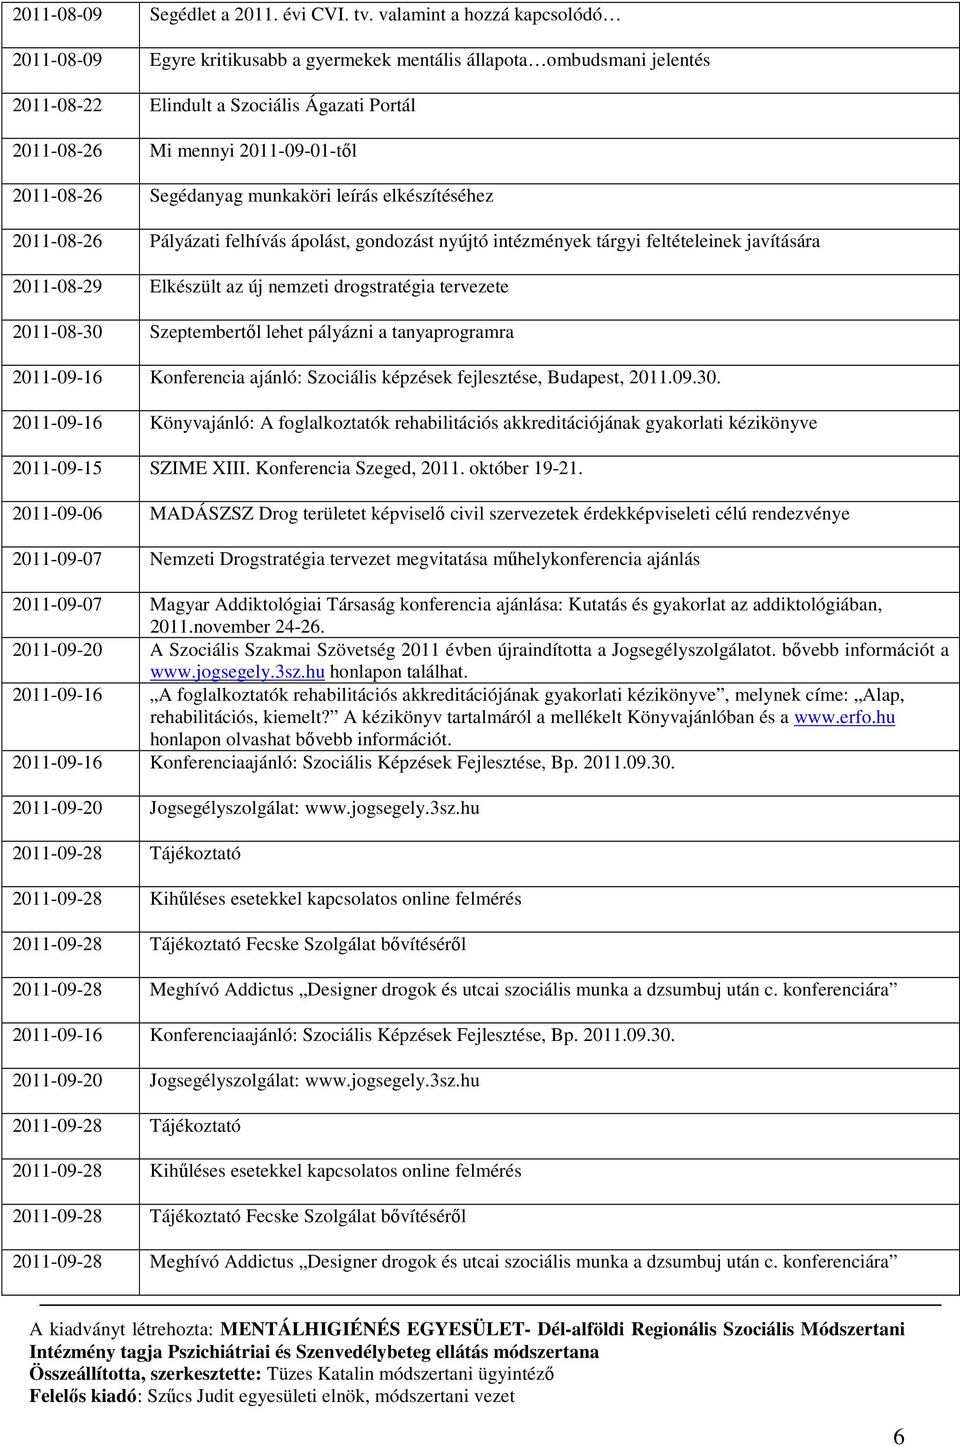 2011-08-26 Segédanyag munkaköri leírás elkészítéséhez 2011-08-26 Pályázati felhívás ápolást, gondozást nyújtó intézmények tárgyi feltételeinek javítására 2011-08-29 Elkészült az új nemzeti